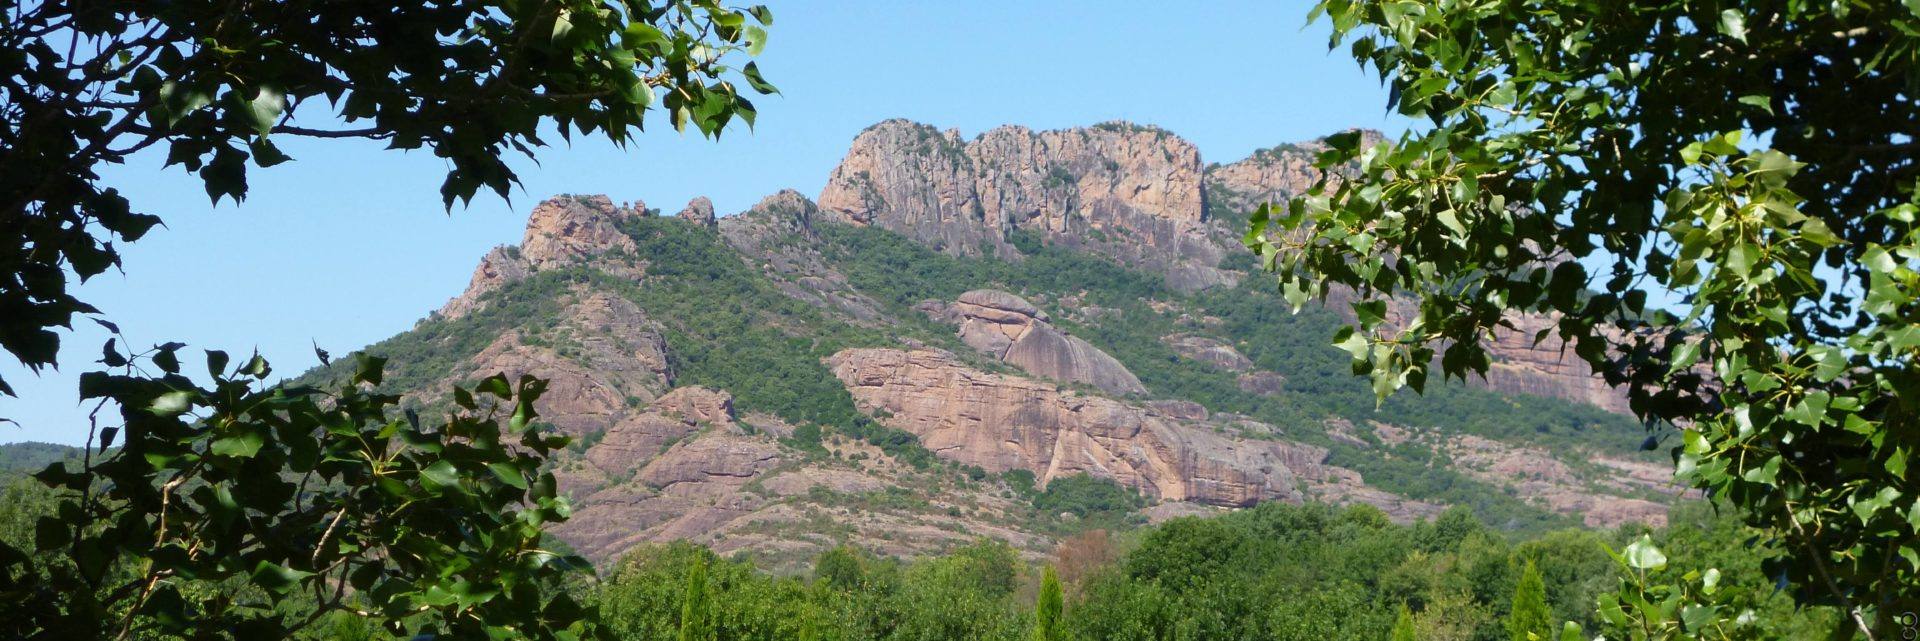 Le rocher de Roquebrune - Var